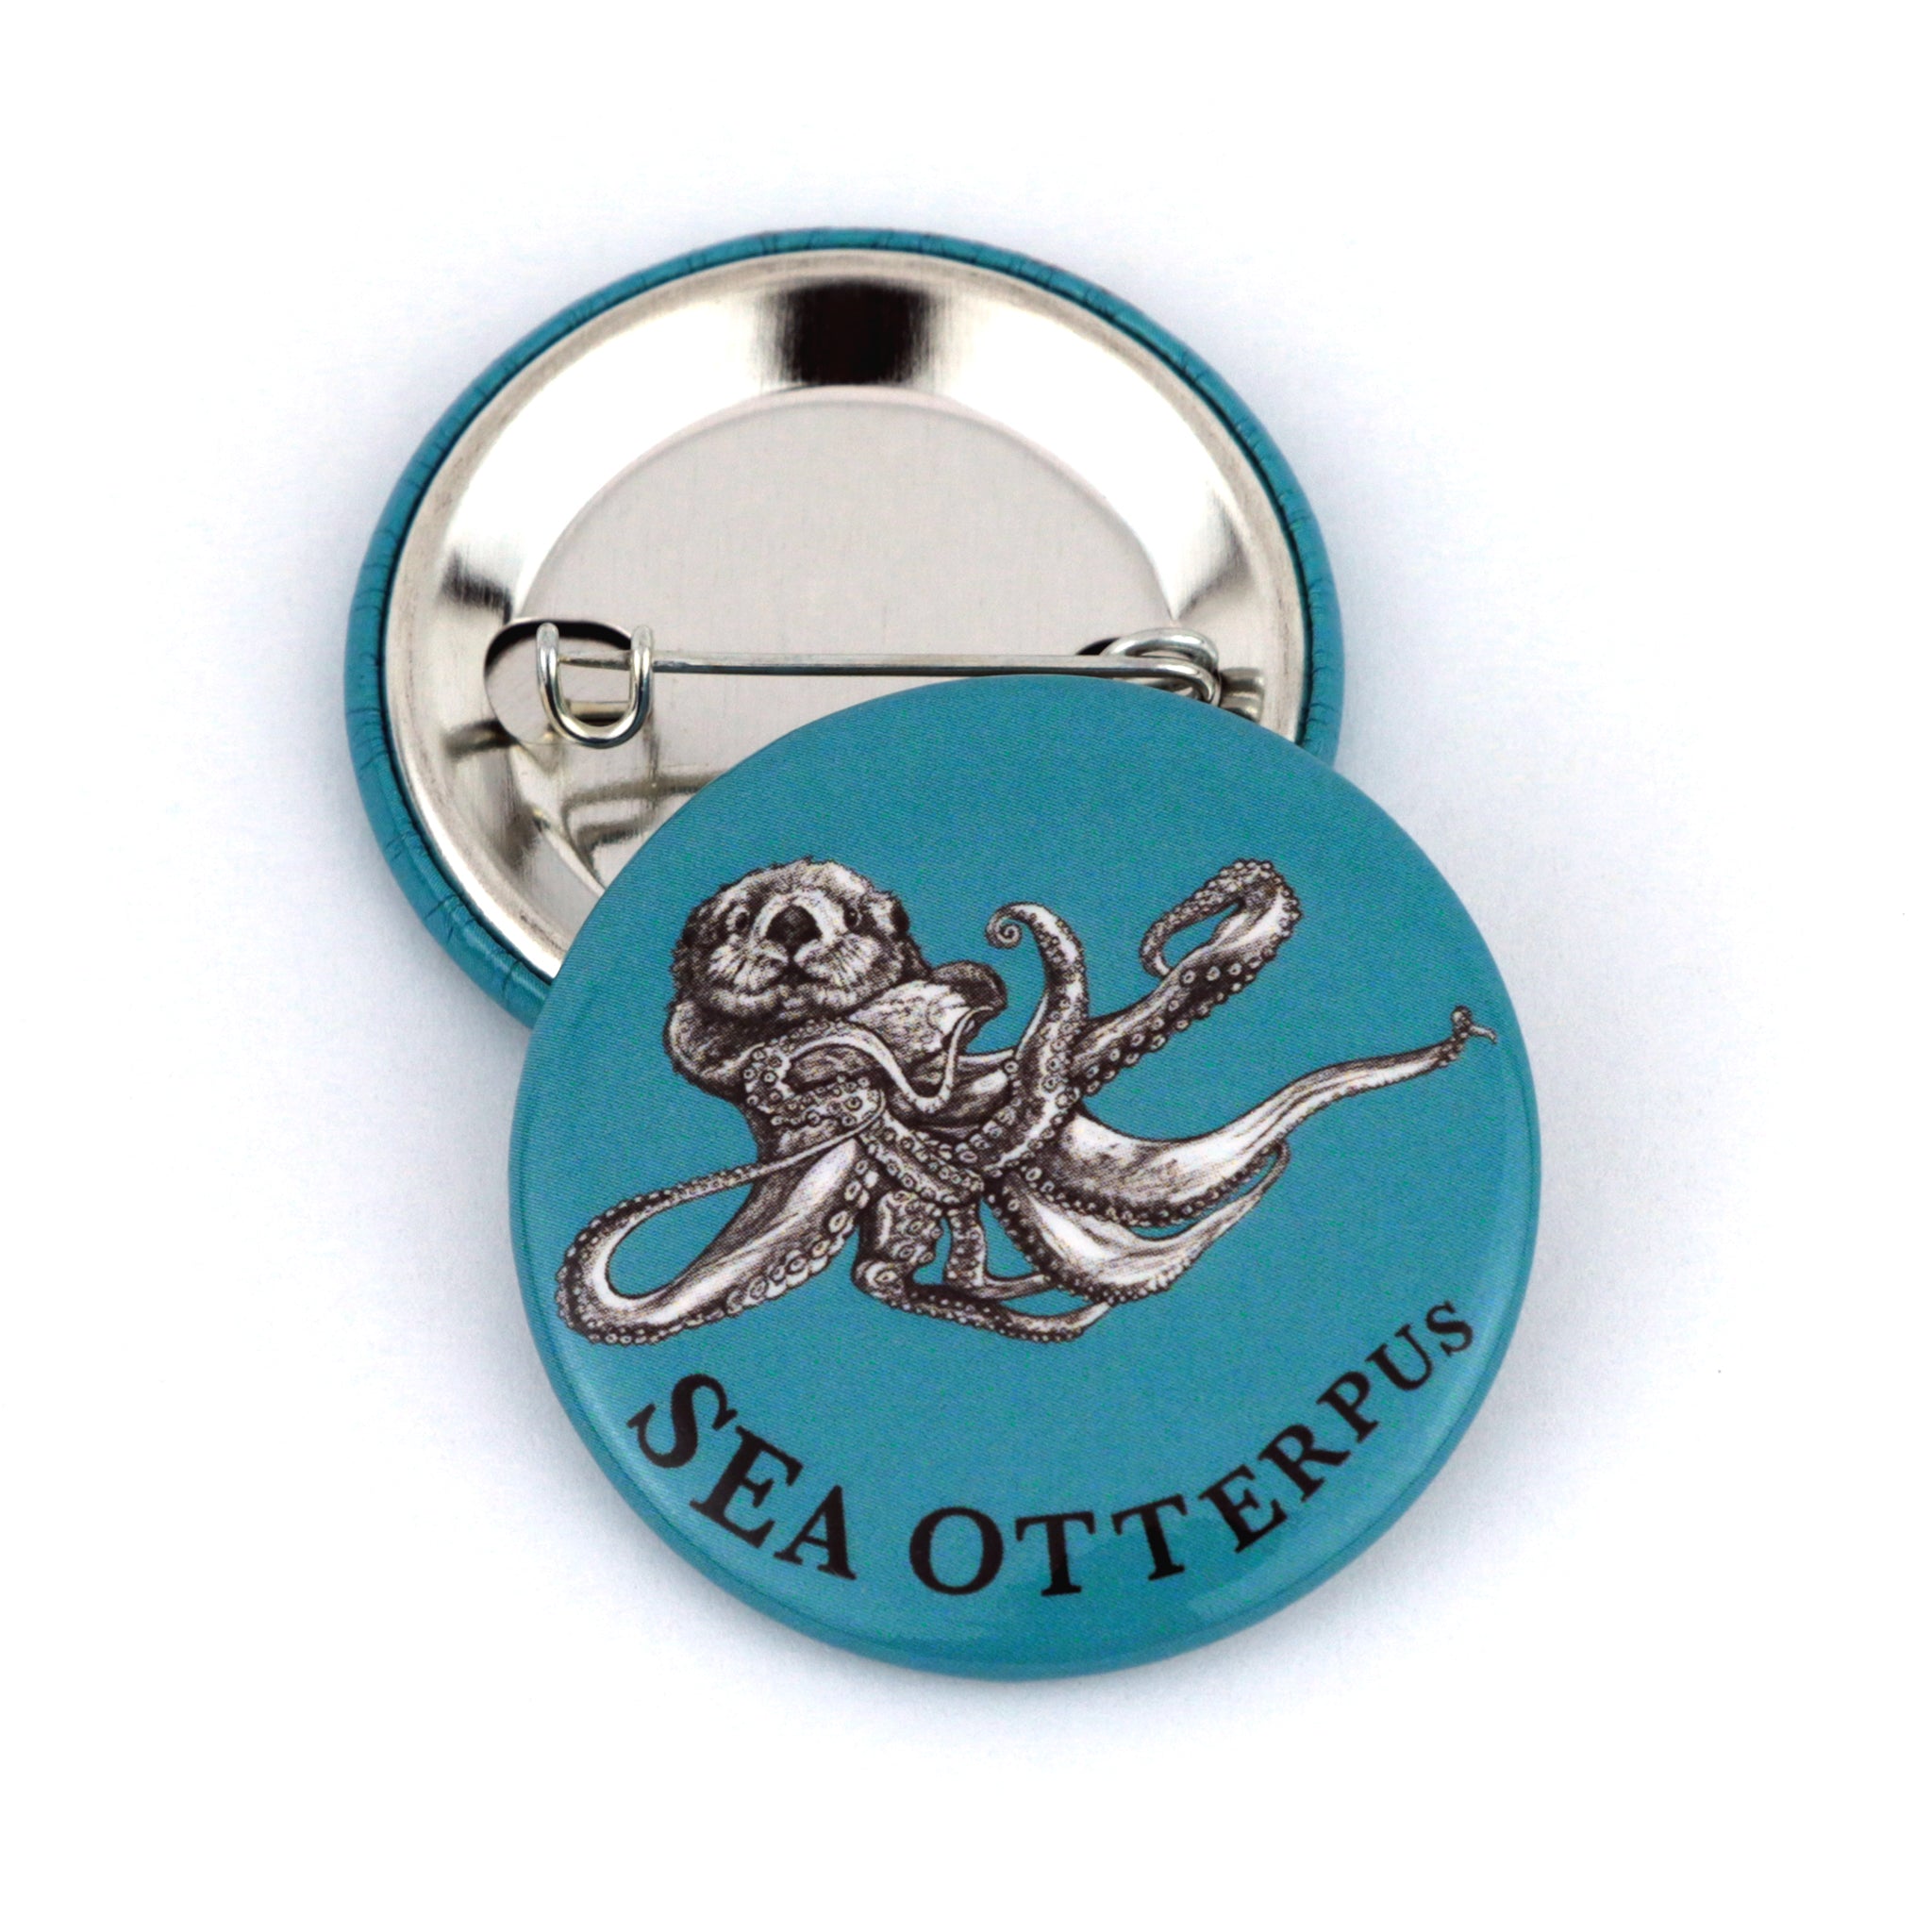 Sea Otterpus | Sea Otter + Octopus Hybrid Animal | 1.5" Pinback Button